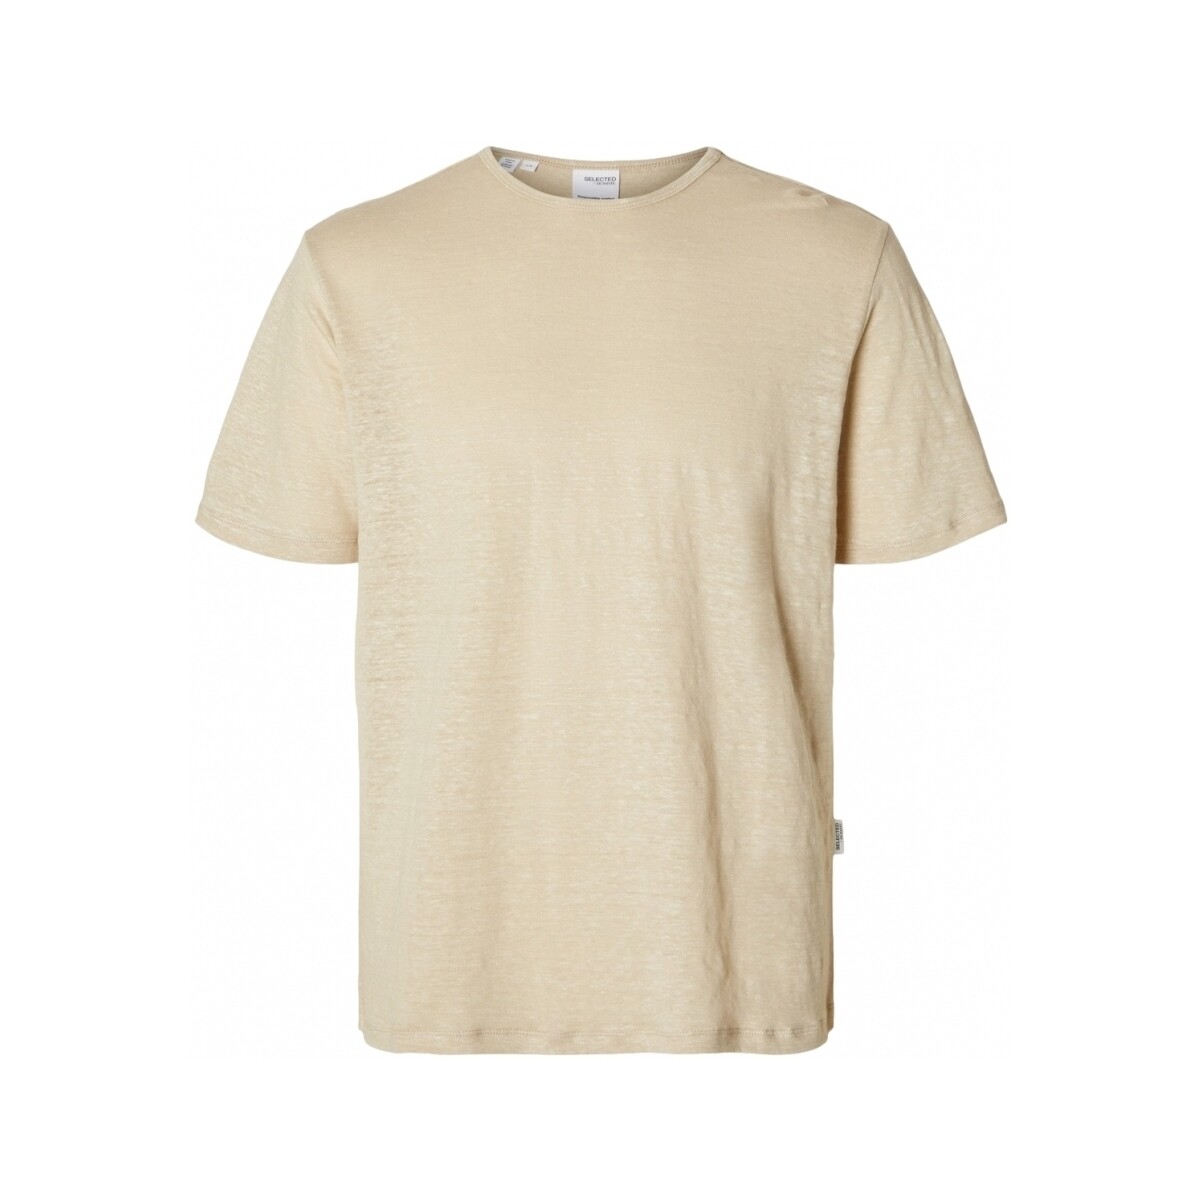 Ruhák Férfi Pólók / Galléros Pólók Selected T-Shirt Bet Linen - Oatmeal Bézs